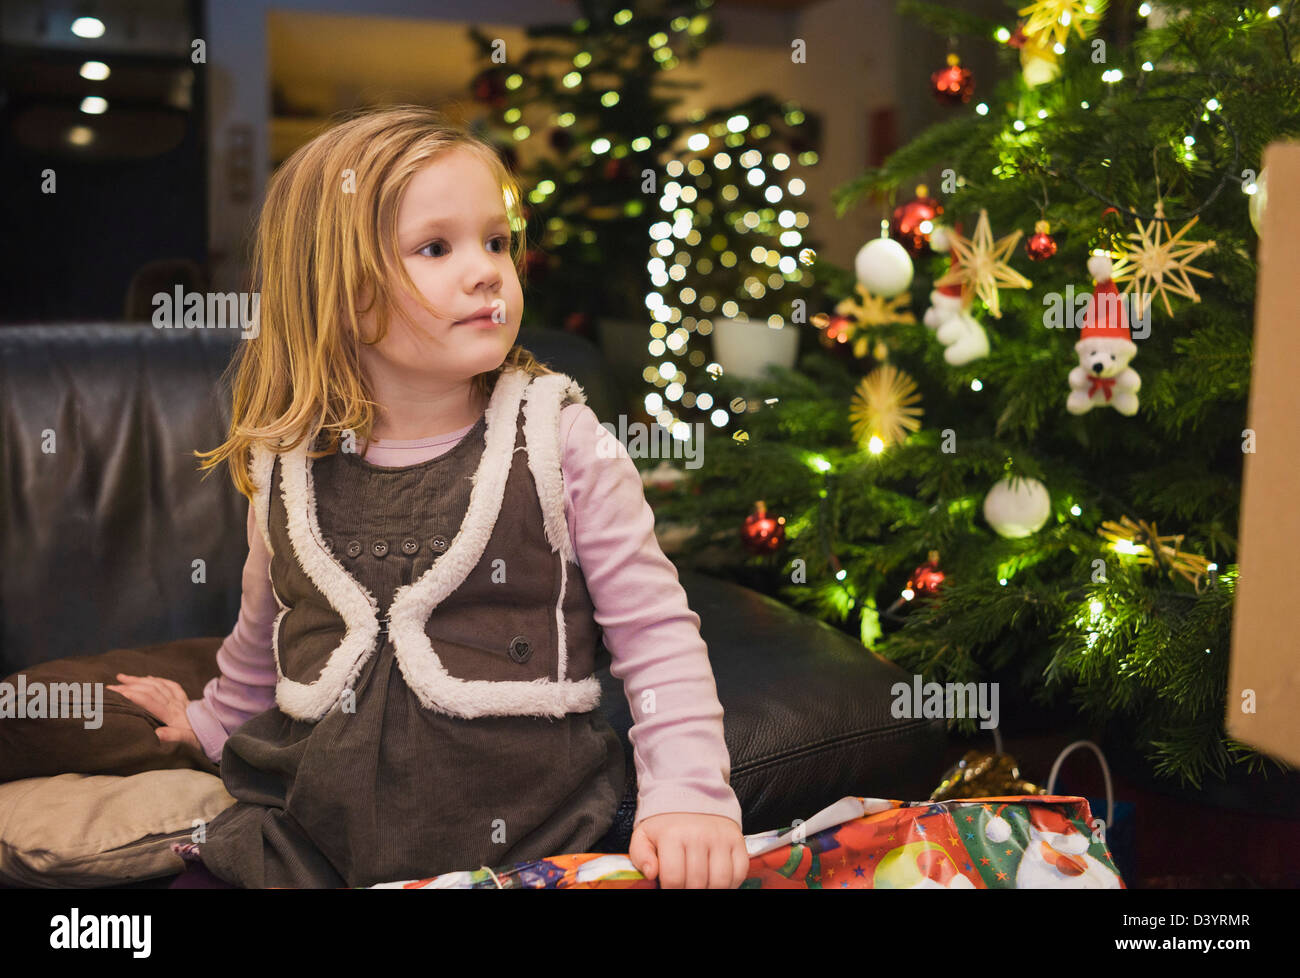 Fille sur à la maison avec l'arbre de Noël, Allemagne Banque D'Images